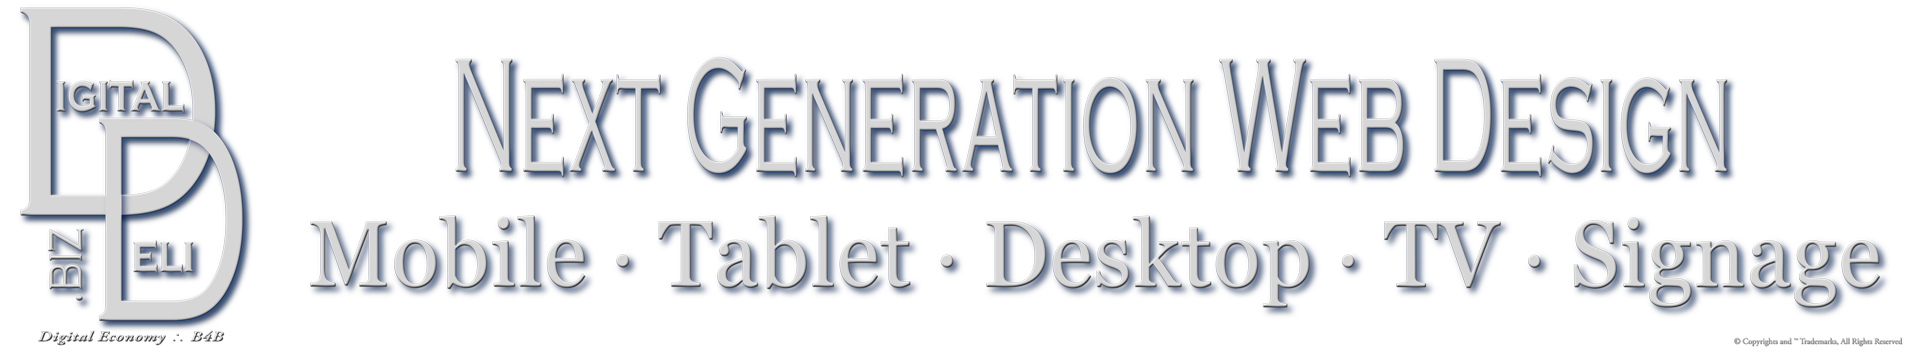 DigitalDeli.biz Properties & Brands Imprint, Next Generation Web Design